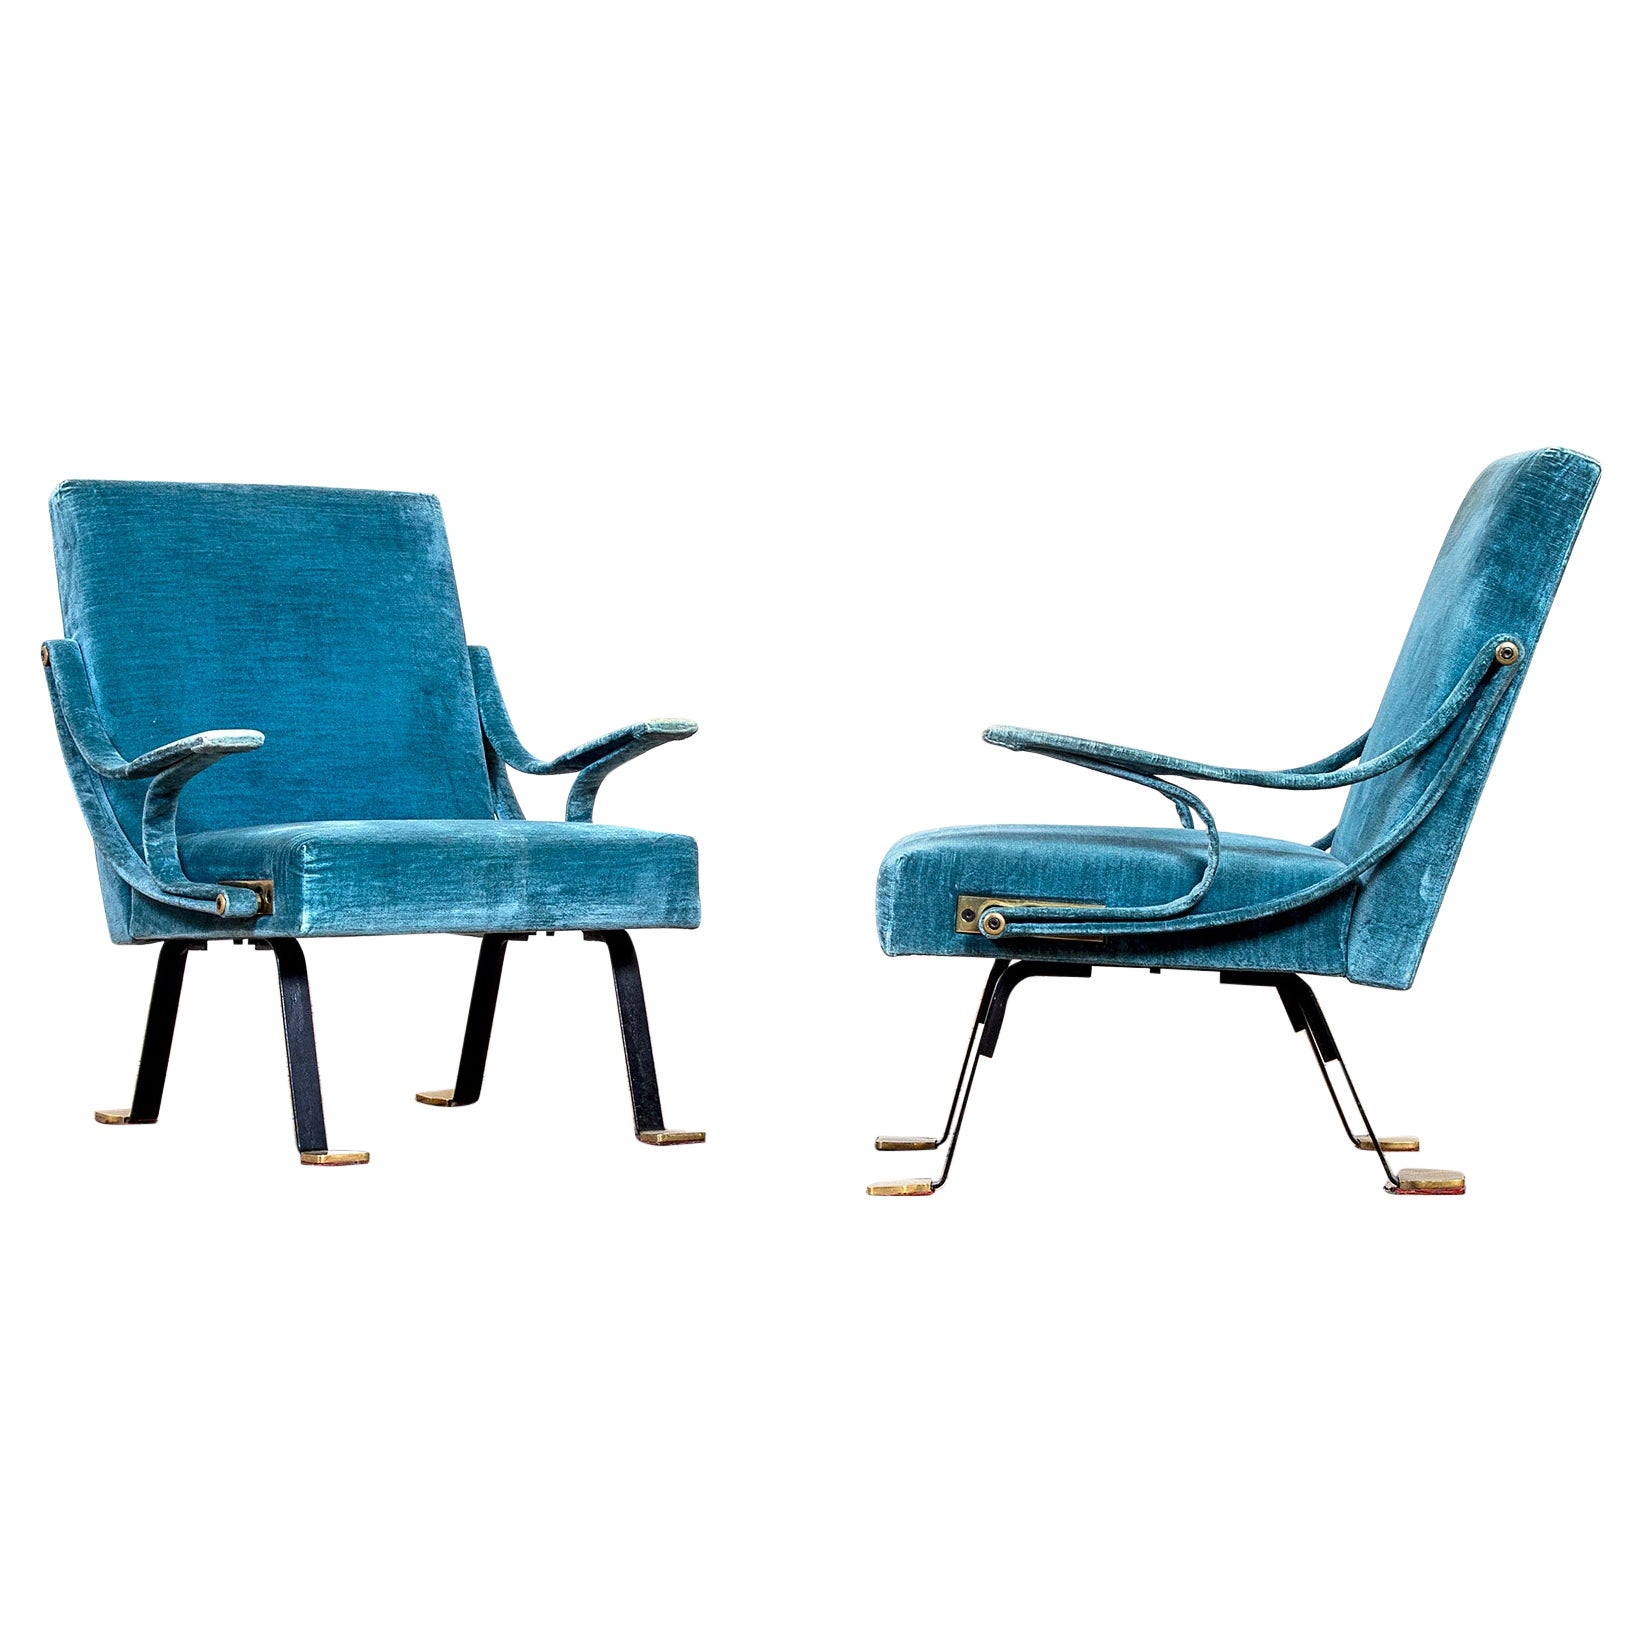 Paar Sessel von Ignazio Gardella aus dem 20. Jahrhundert mod. Digamma für Gavina, 1950er Jahre